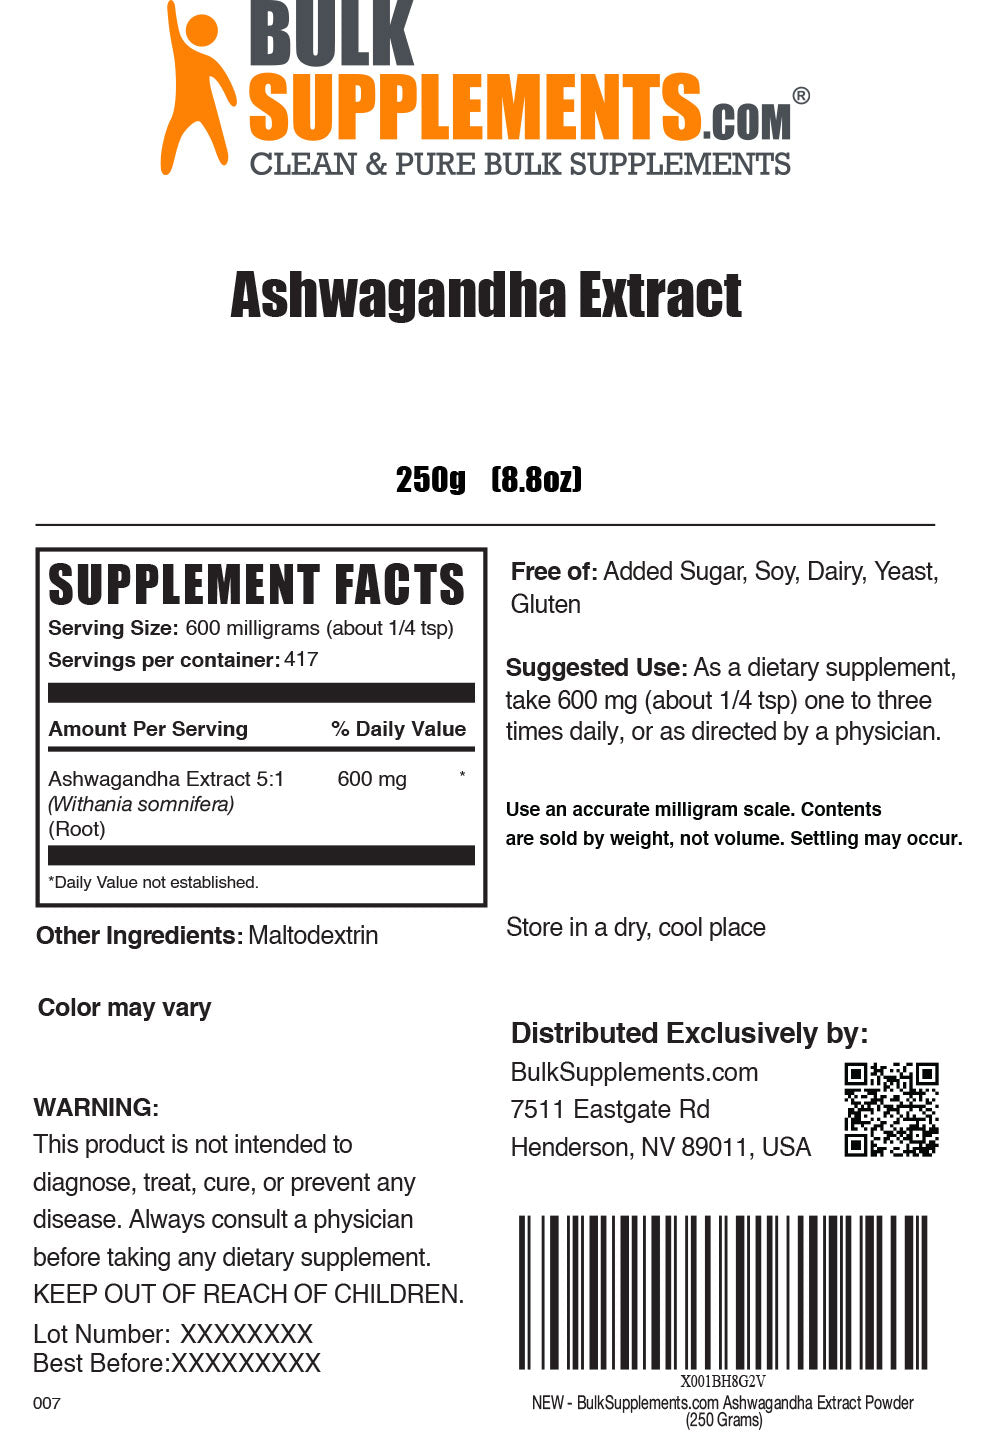 Ashwagandha Extract powder label 250g